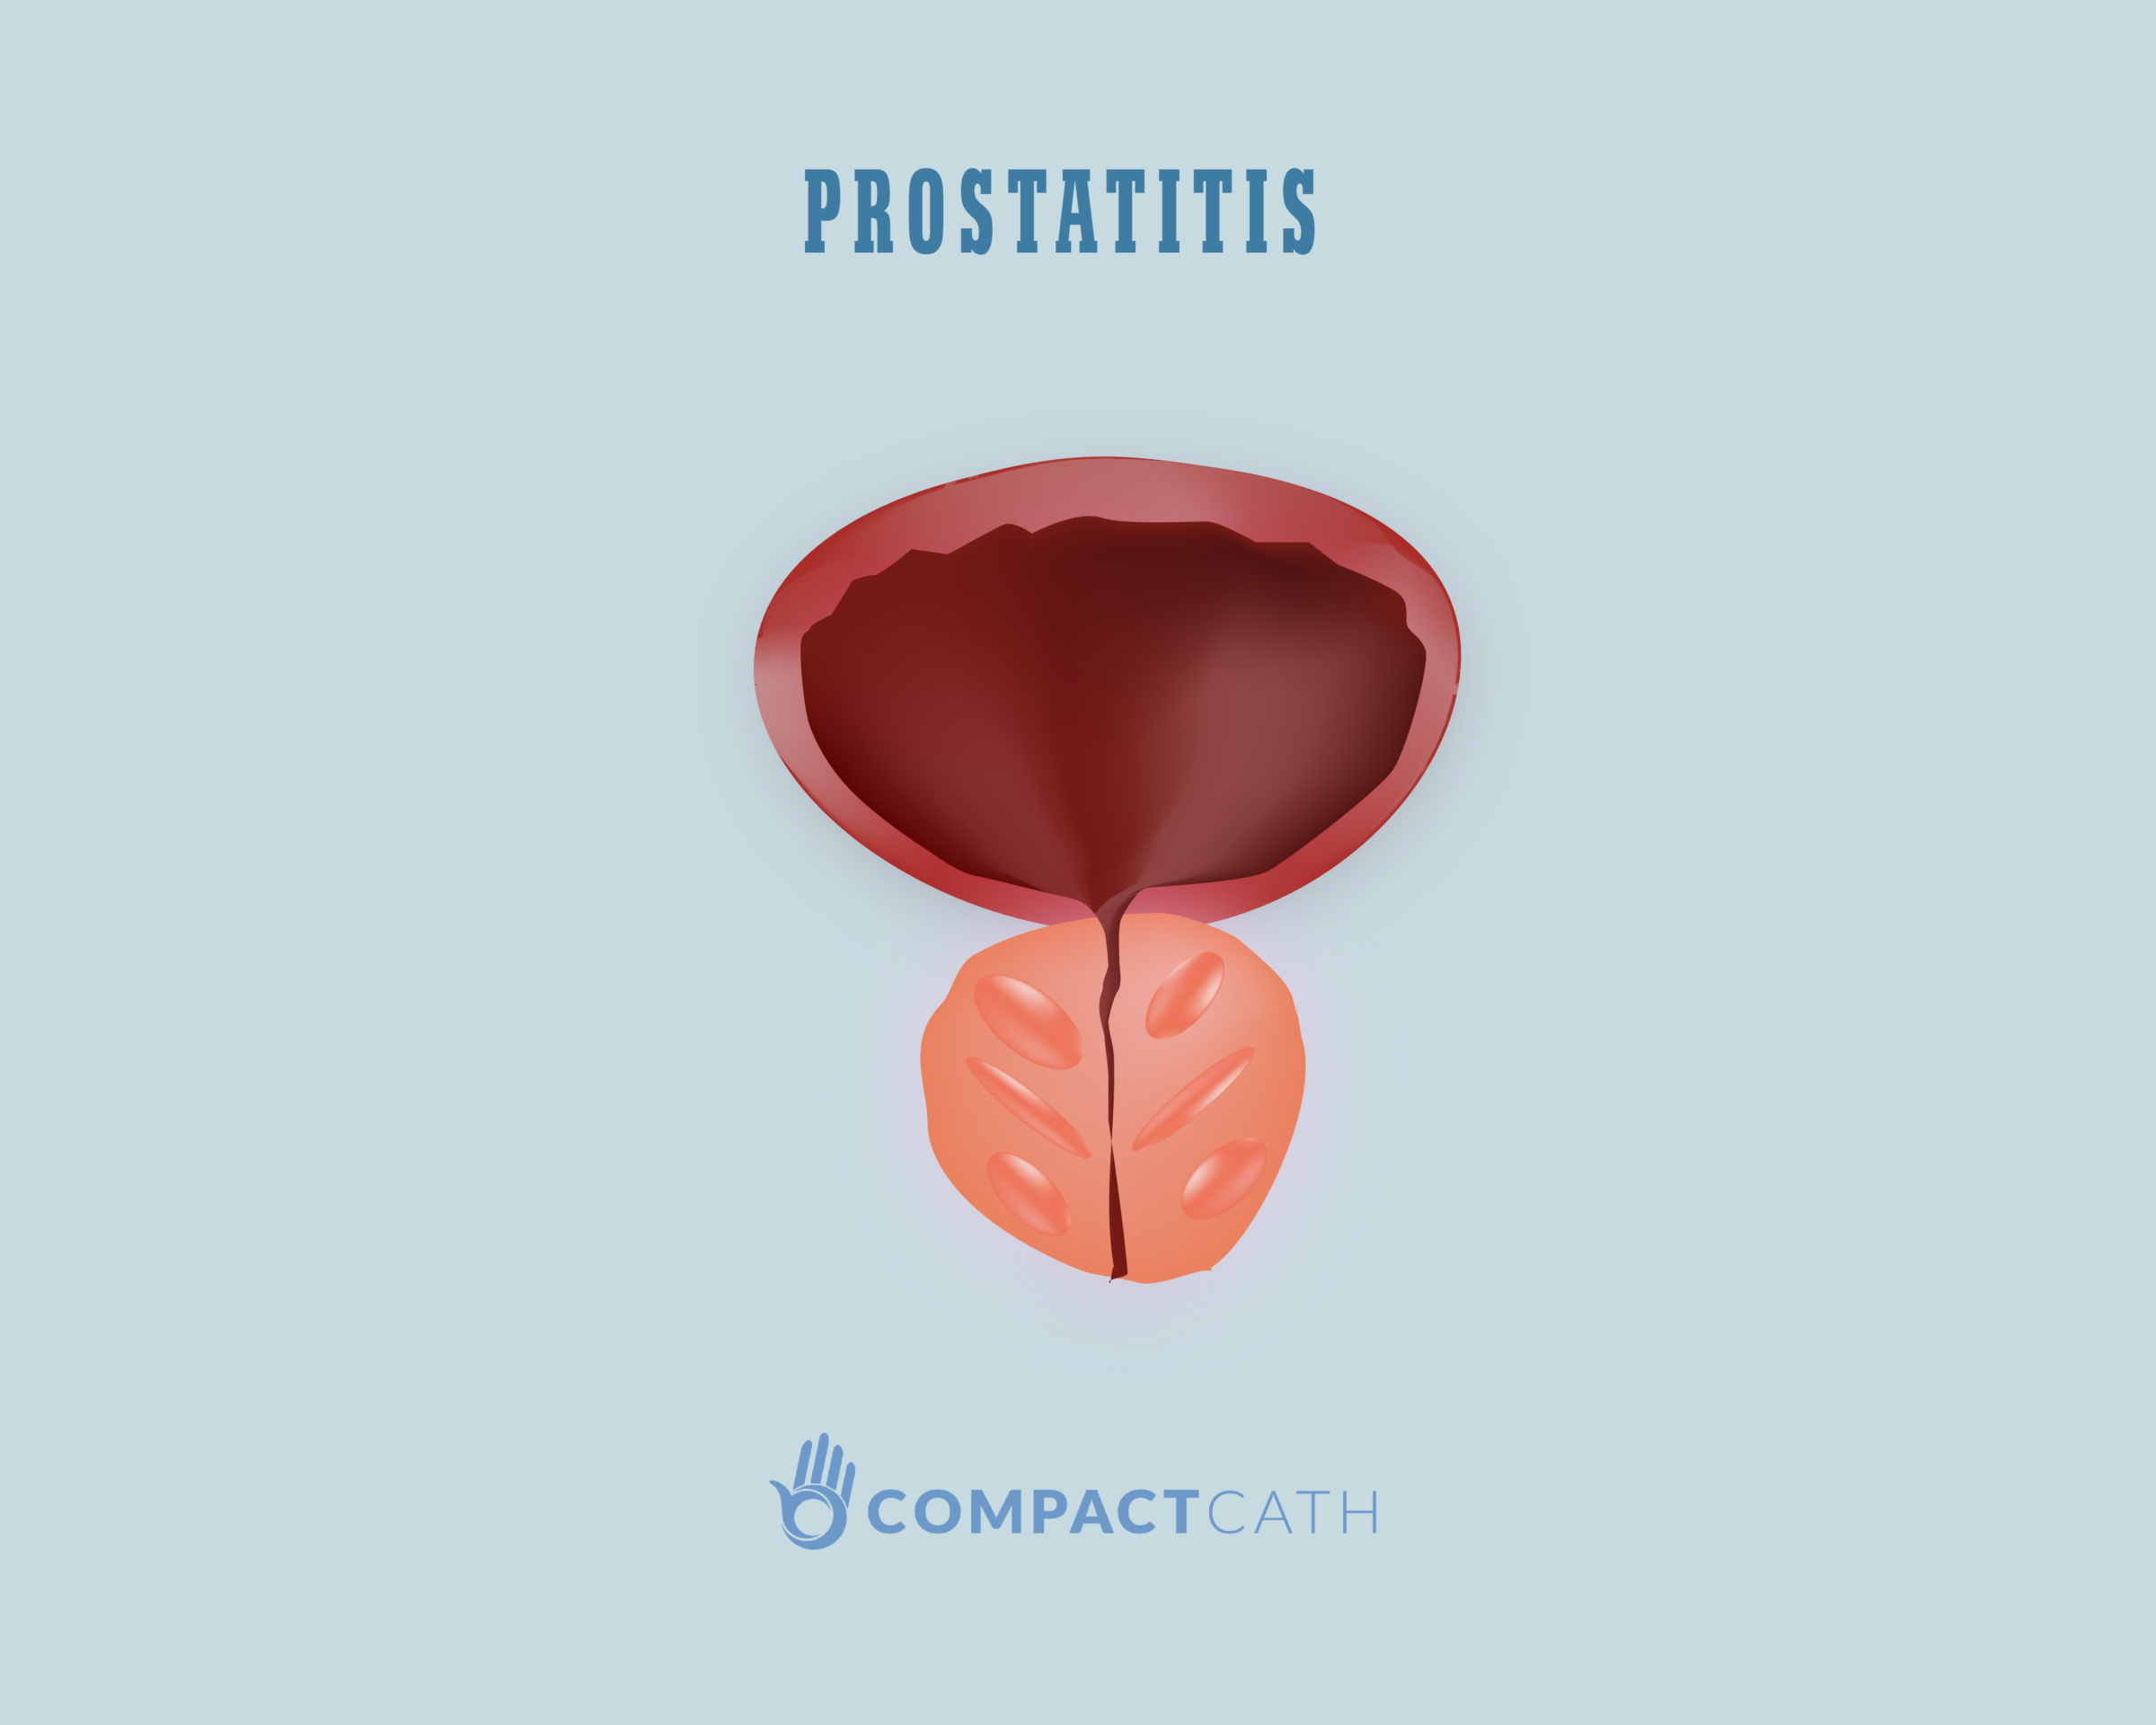 Prostatitis a fiatal korosztályban Népgyógyászat krónikus prosztatitisben